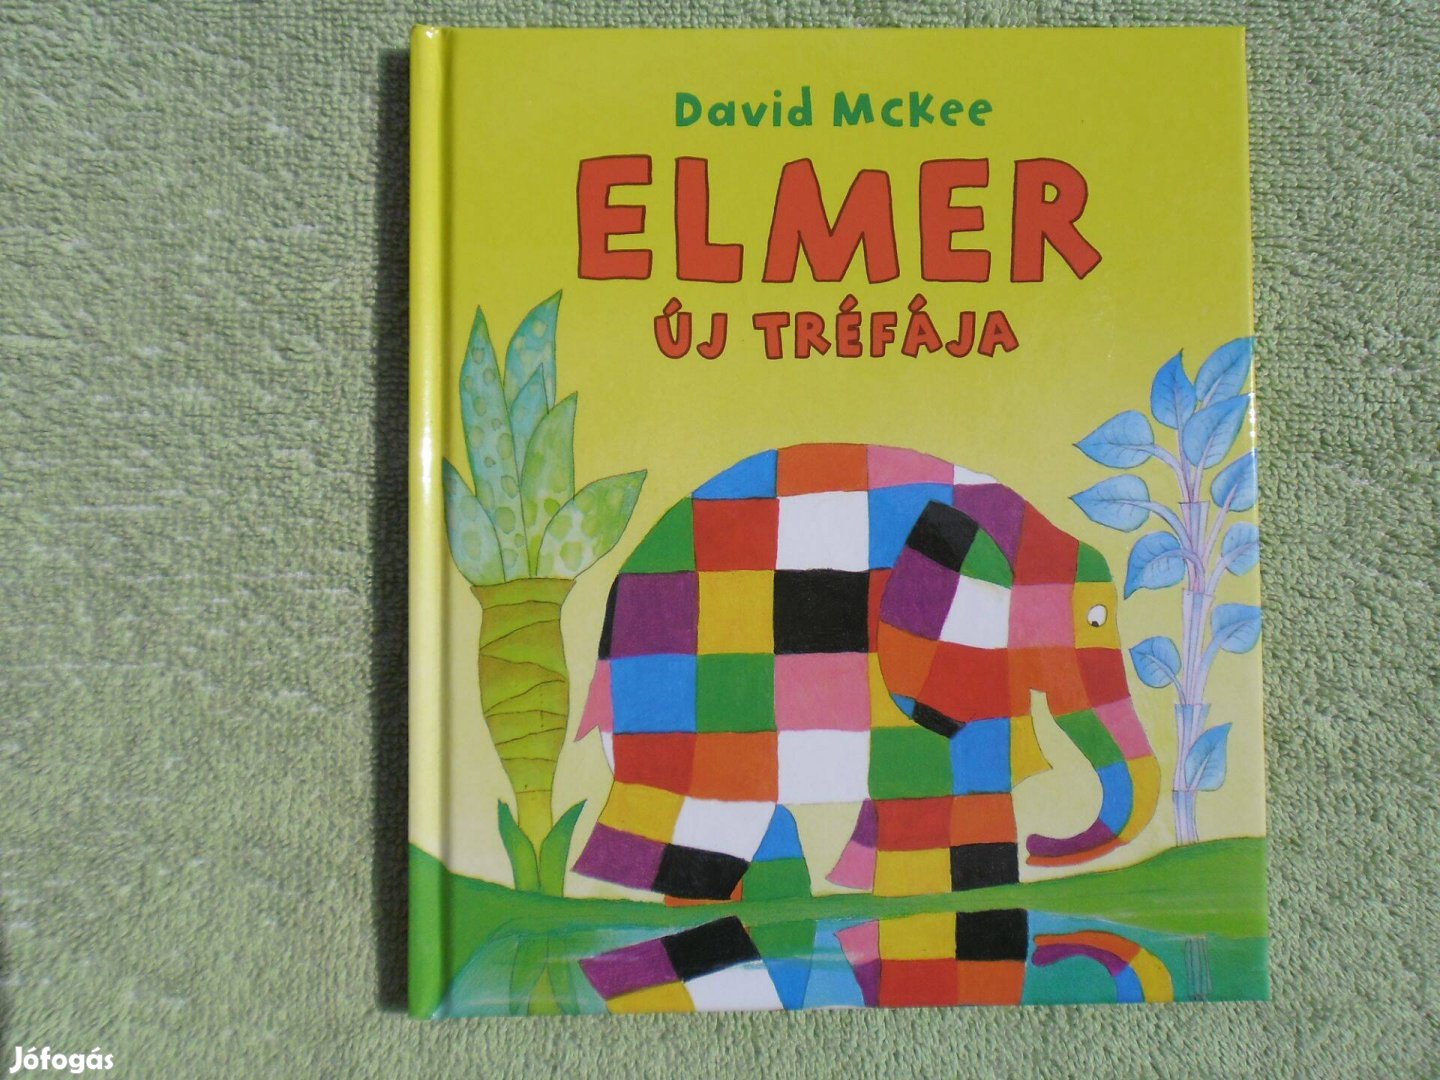 David Mckee: Elmer új tréfája